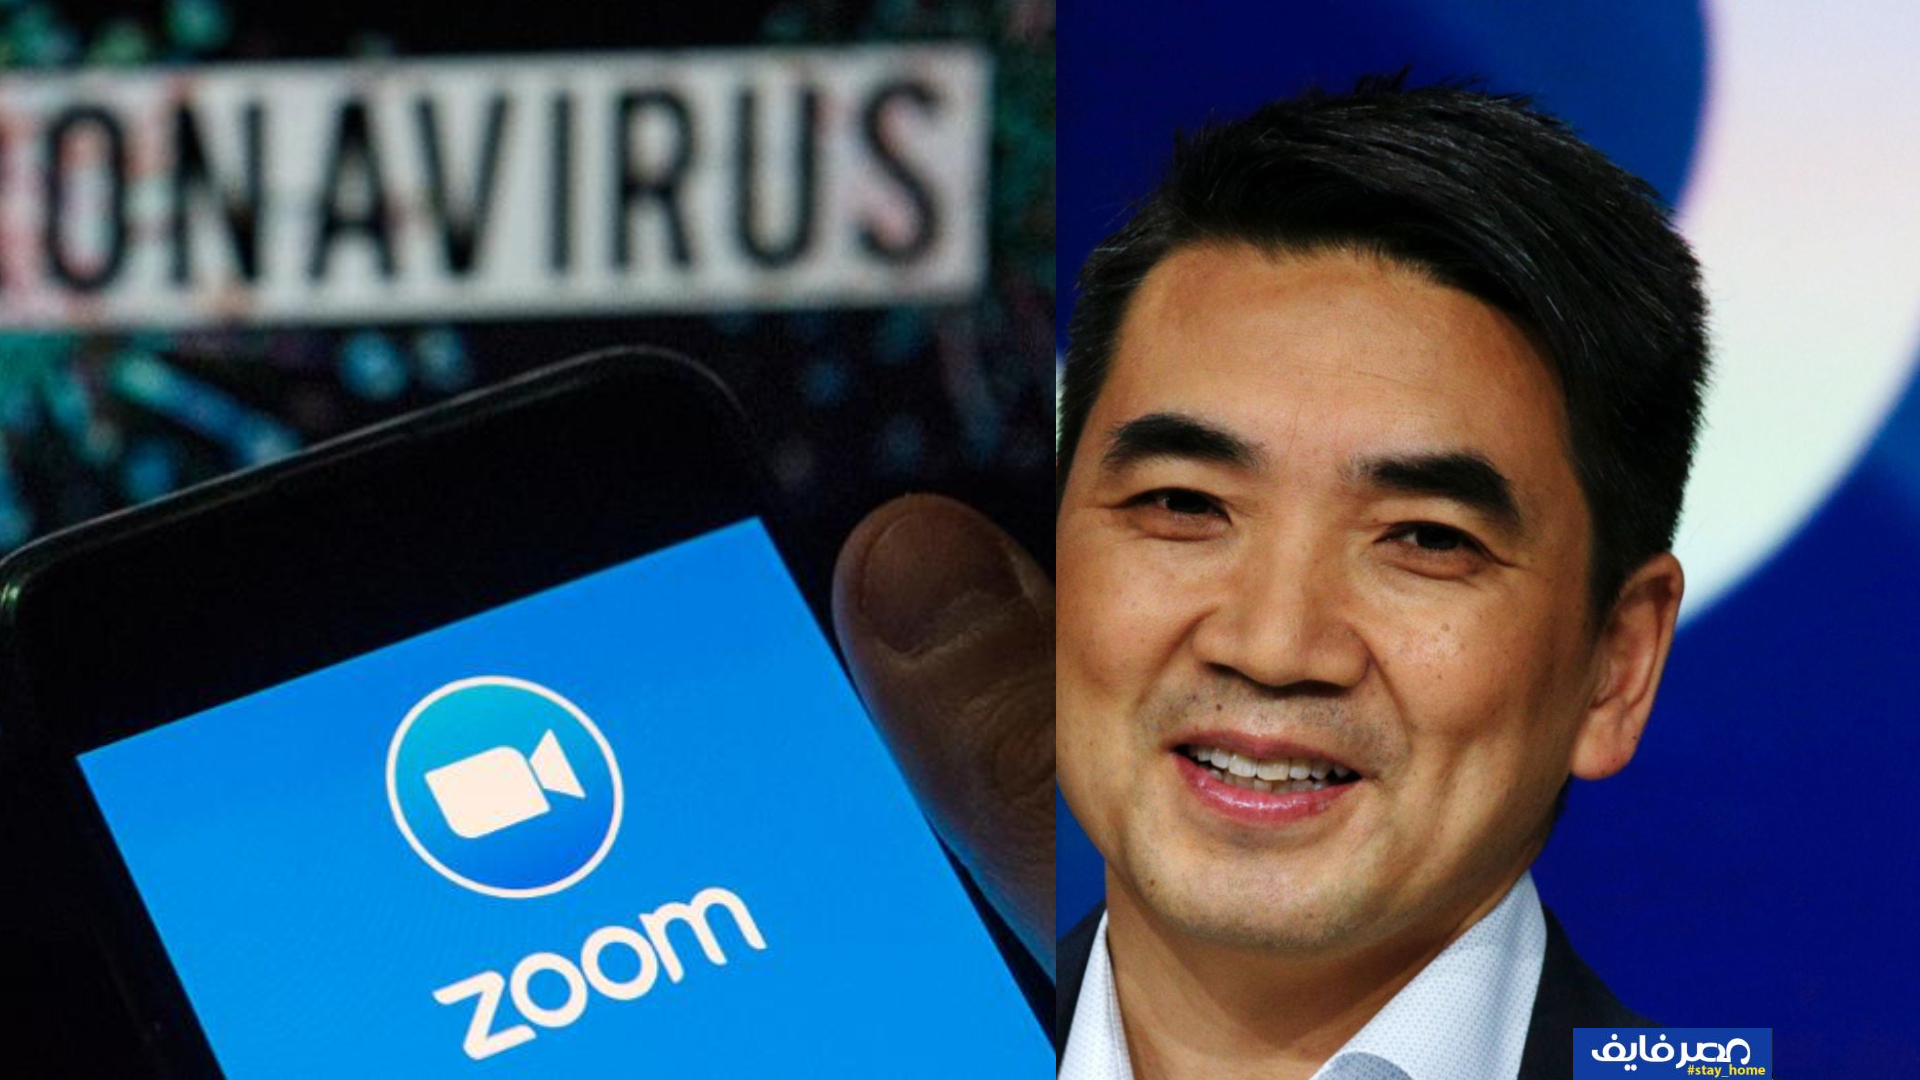 كيف نجحت شركة زووم وأصبحت منافس قوي لـ فيسبوك وهل حقًا تتجسس على الصين؟